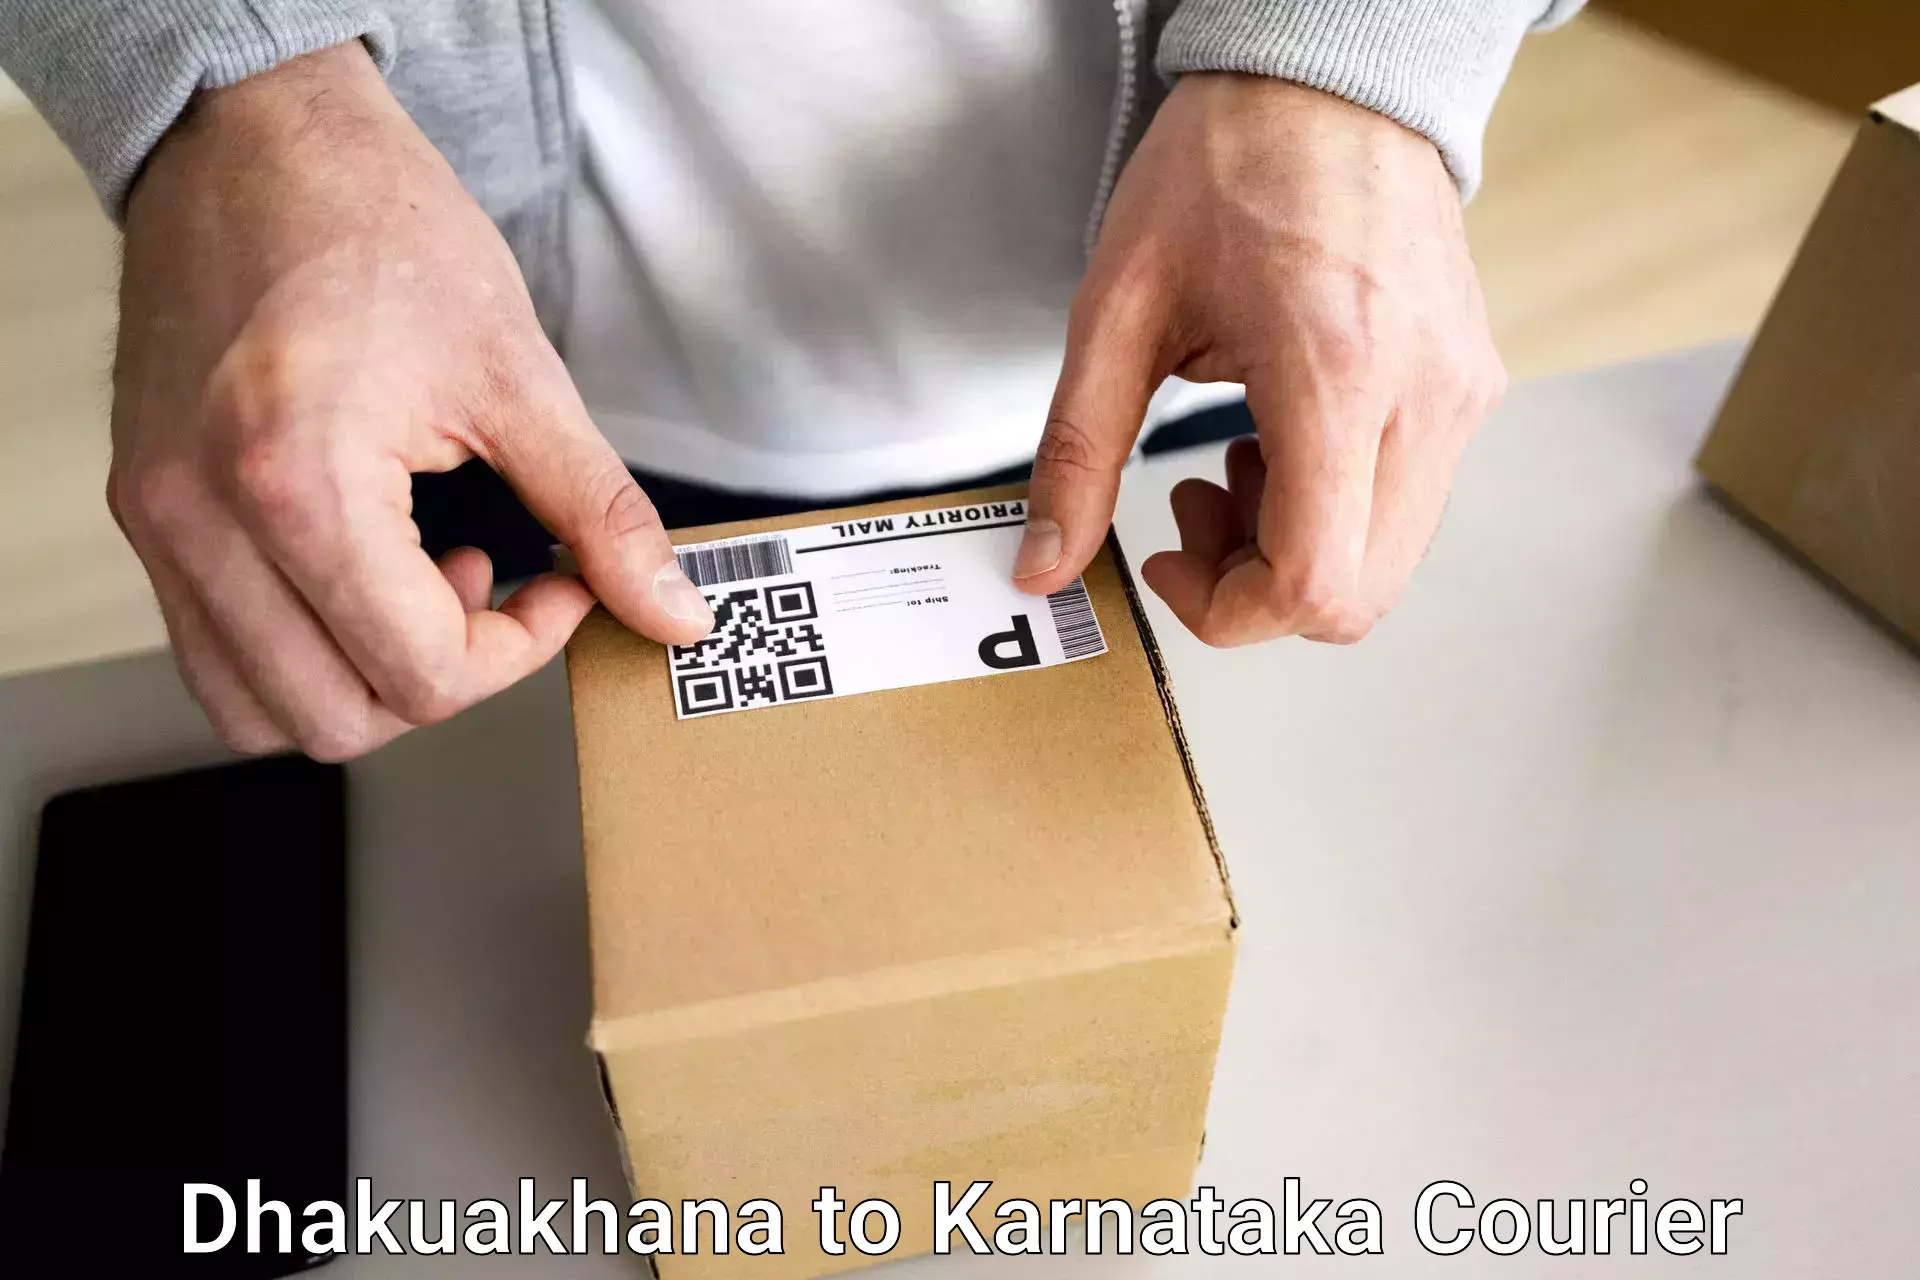 Comprehensive baggage service Dhakuakhana to Karnataka